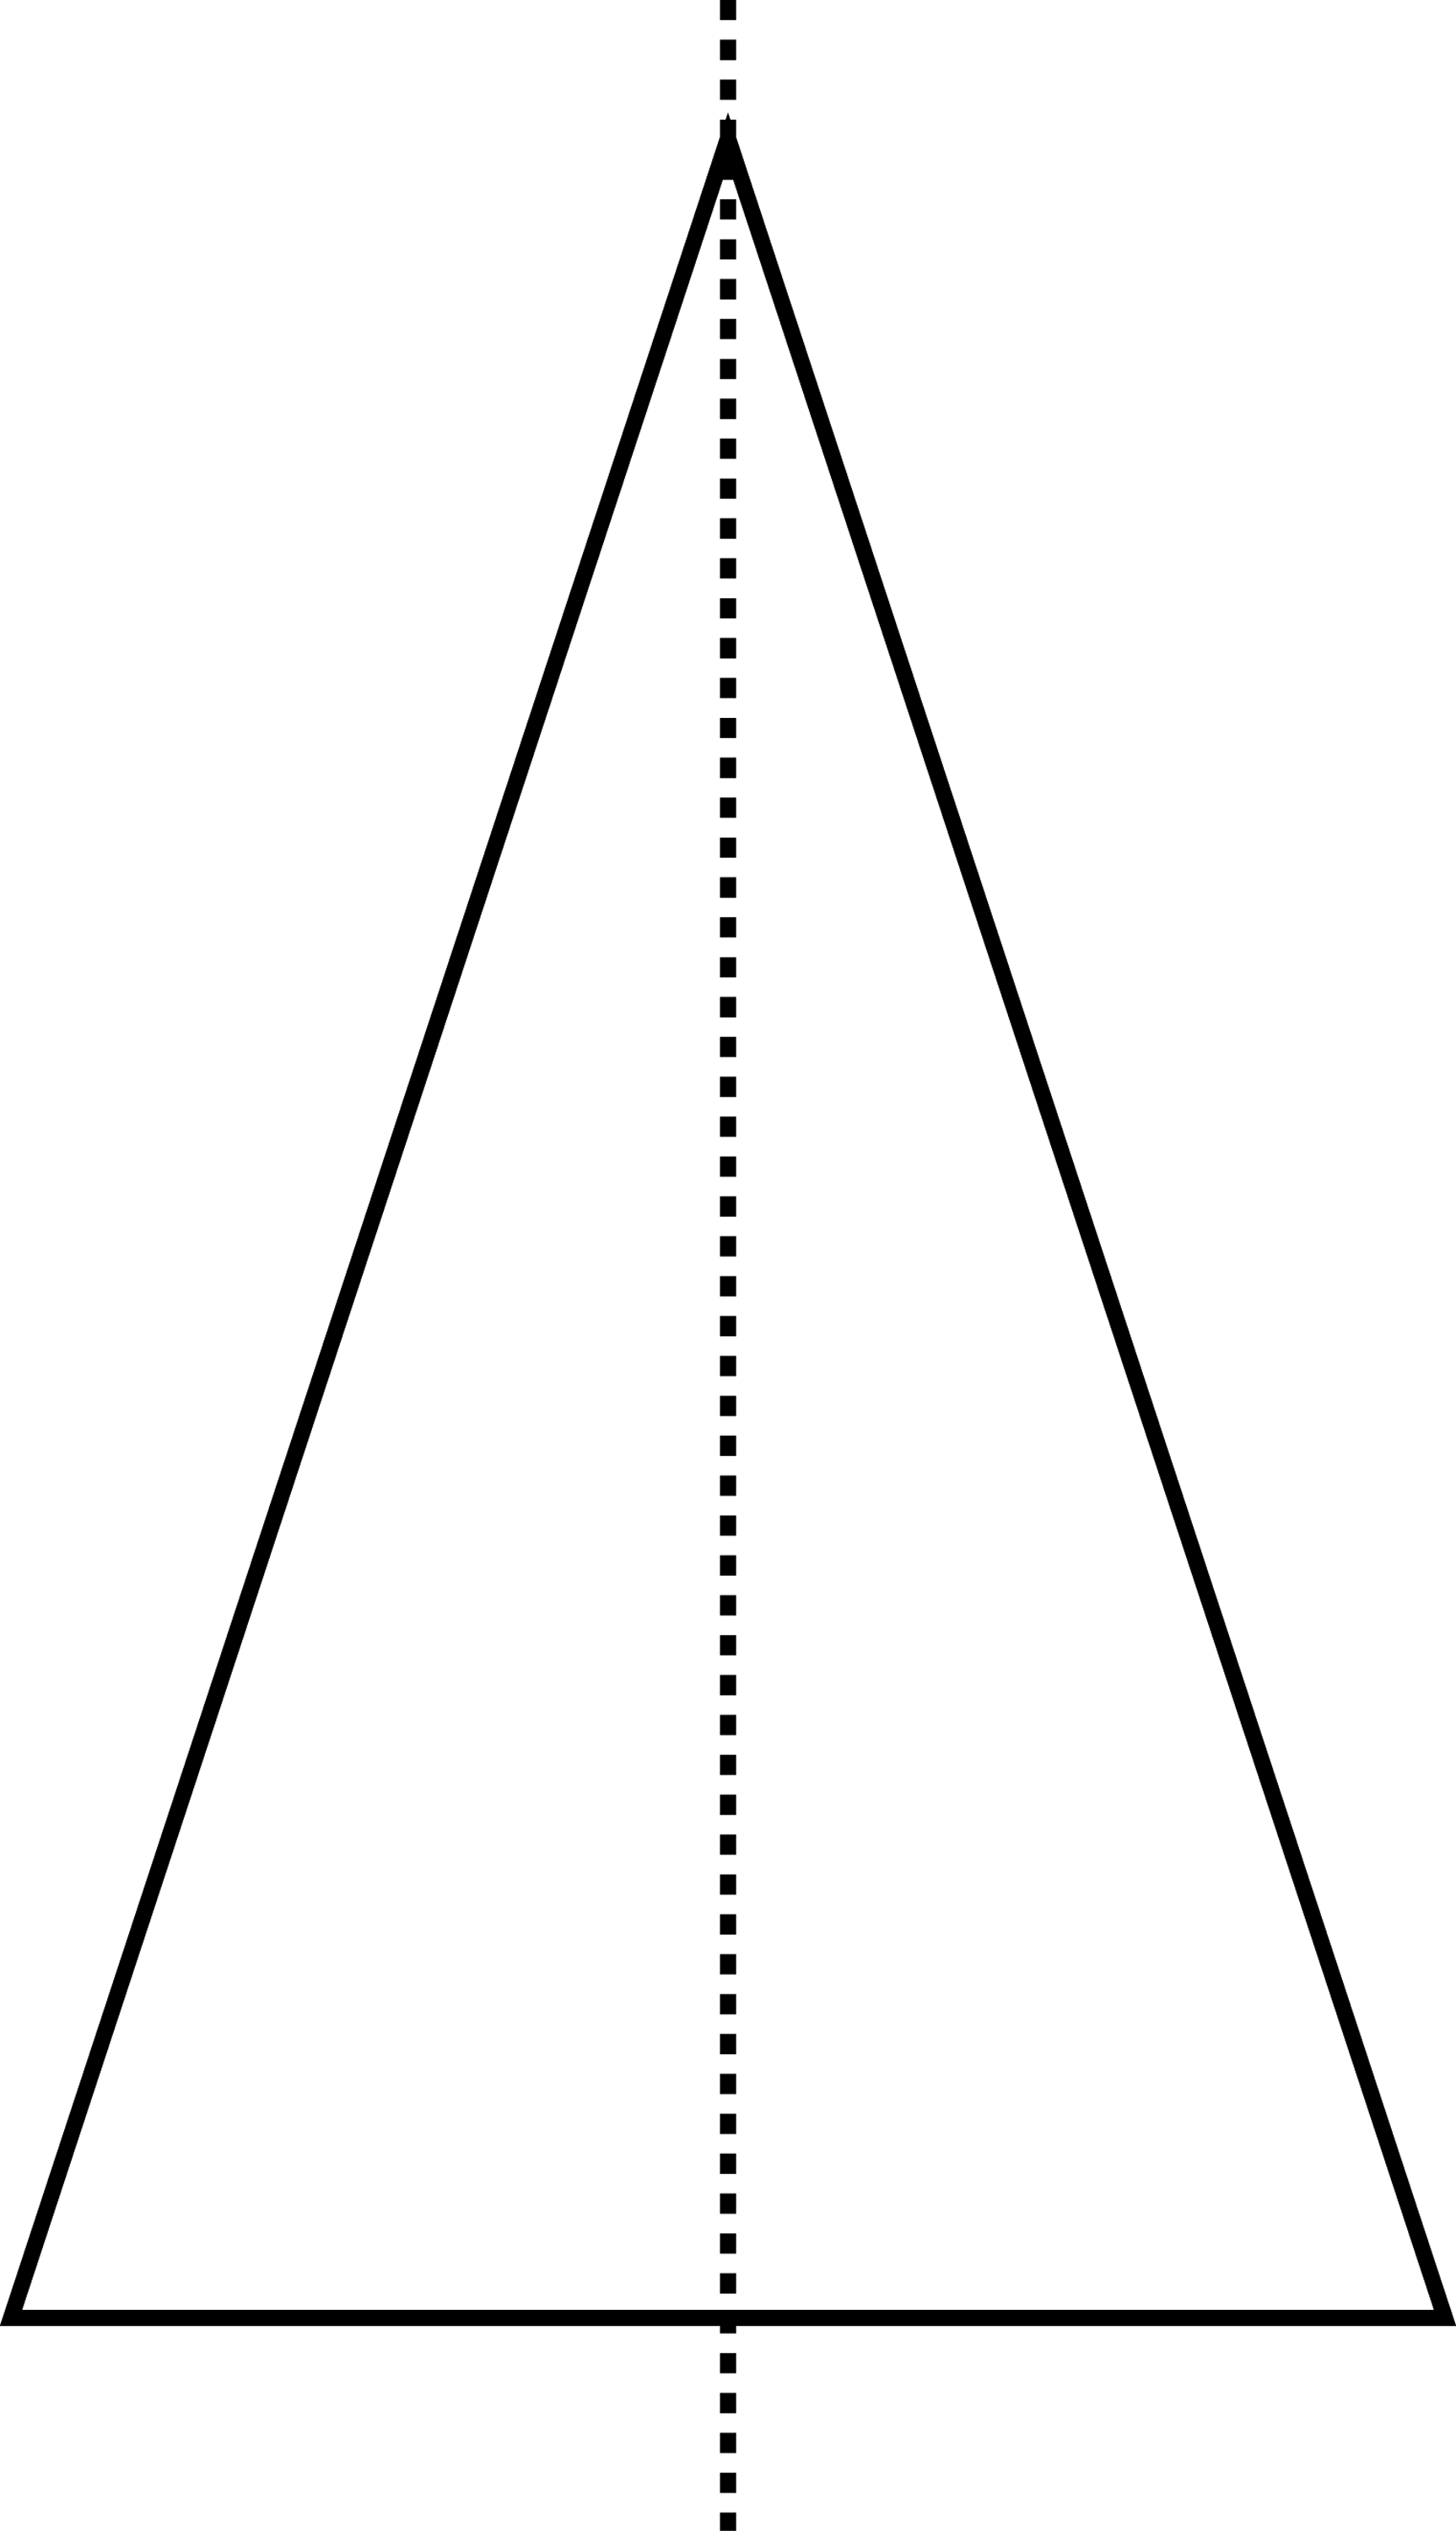 Равнобедренный треугольник имеет три оси симметрии верно. Равнобедренный треугольник в перспективе. Ось симметрии равнобедренного треугольника. Симметрия треугольника. Осевая симметрия треугольника.